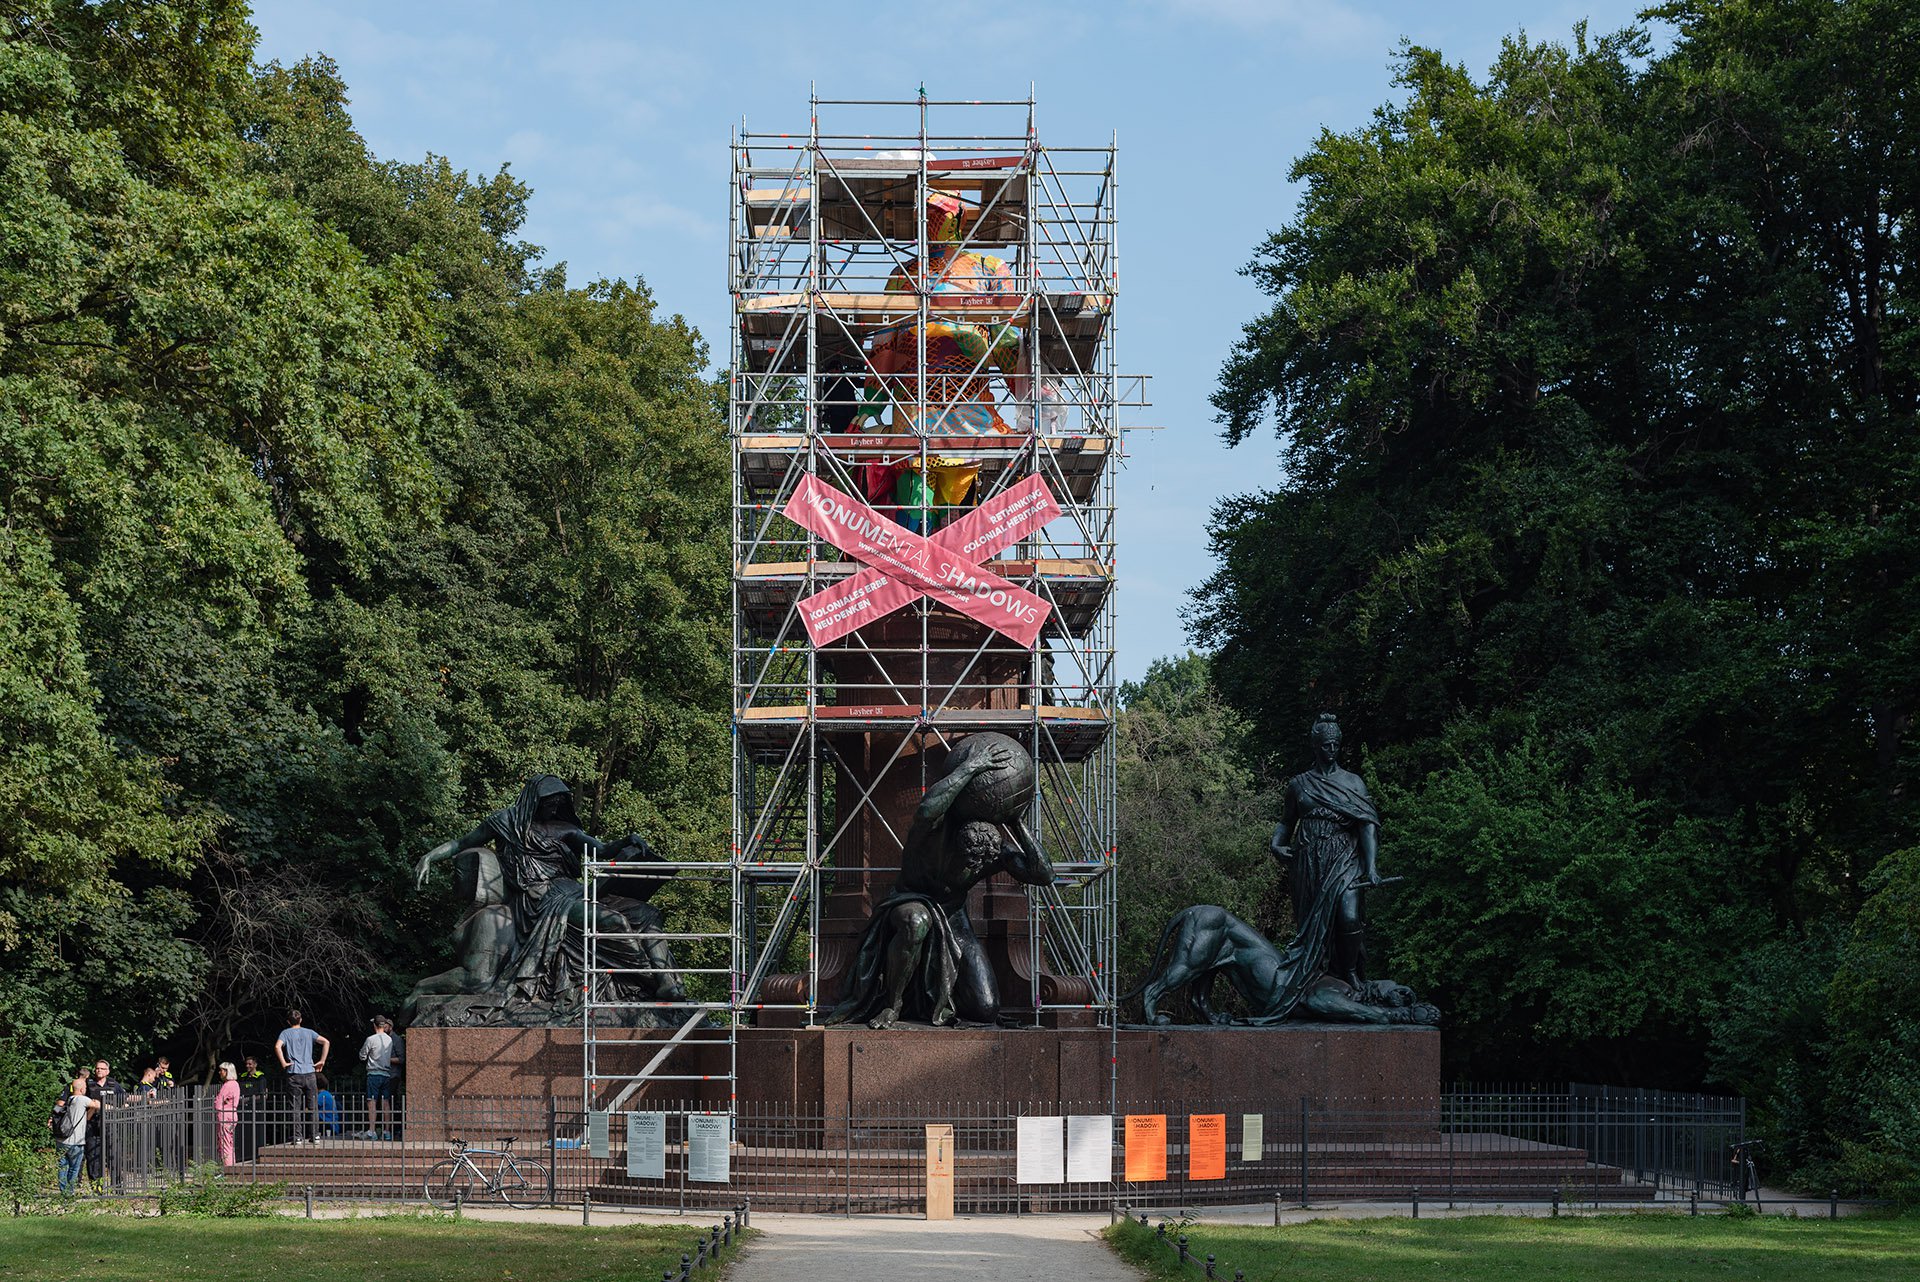 Das Bismarck Denkmal in Berlin Tiergarten. Ein Baugerüst hüllt die Statue ein.  Auf dem Gerüst sind zwei rosa Banner überkreuzt gehängt auf denen in weißer Schrift "Monumental Shadows" steht. Die Statue ist zum Teil mit buntem Pappmaché eingehüllt.